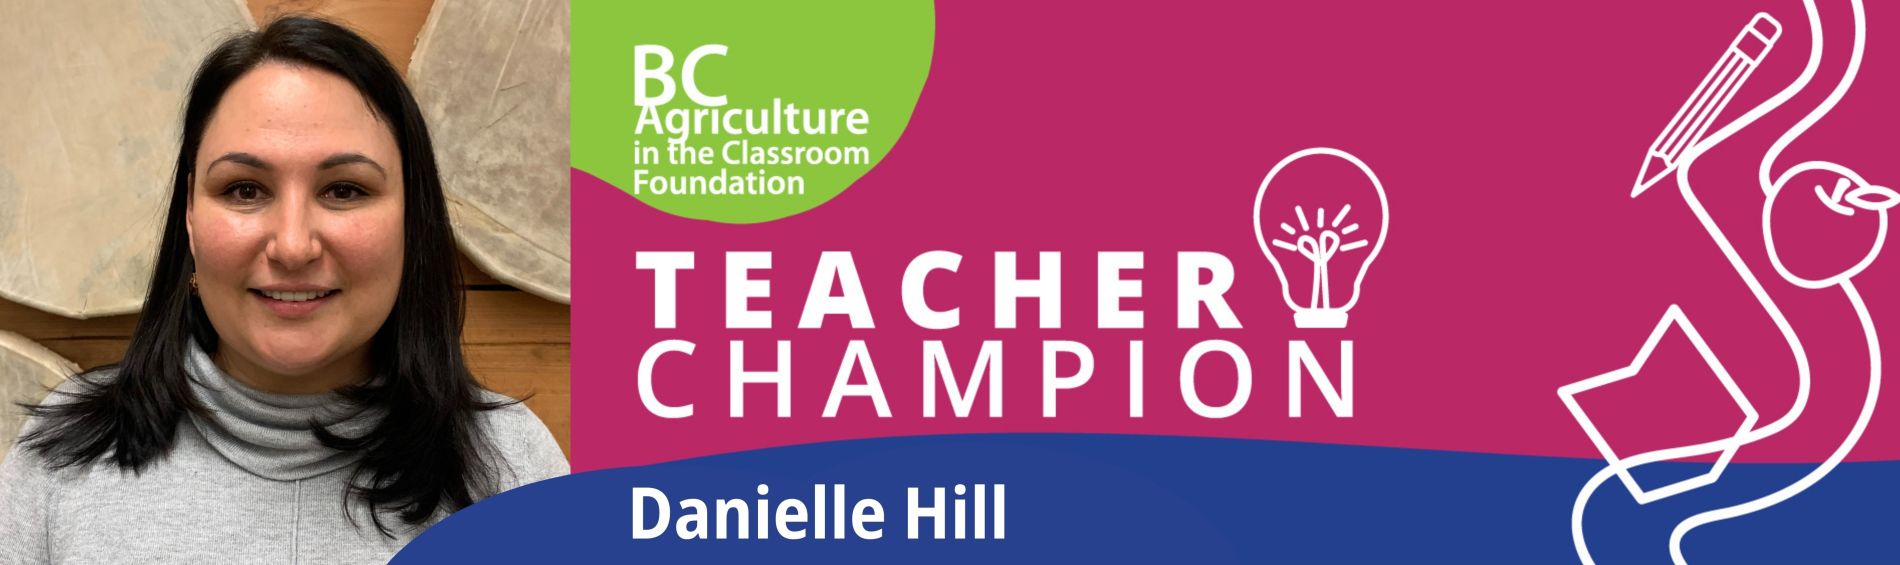 Teacher Champion - Danielle Hill